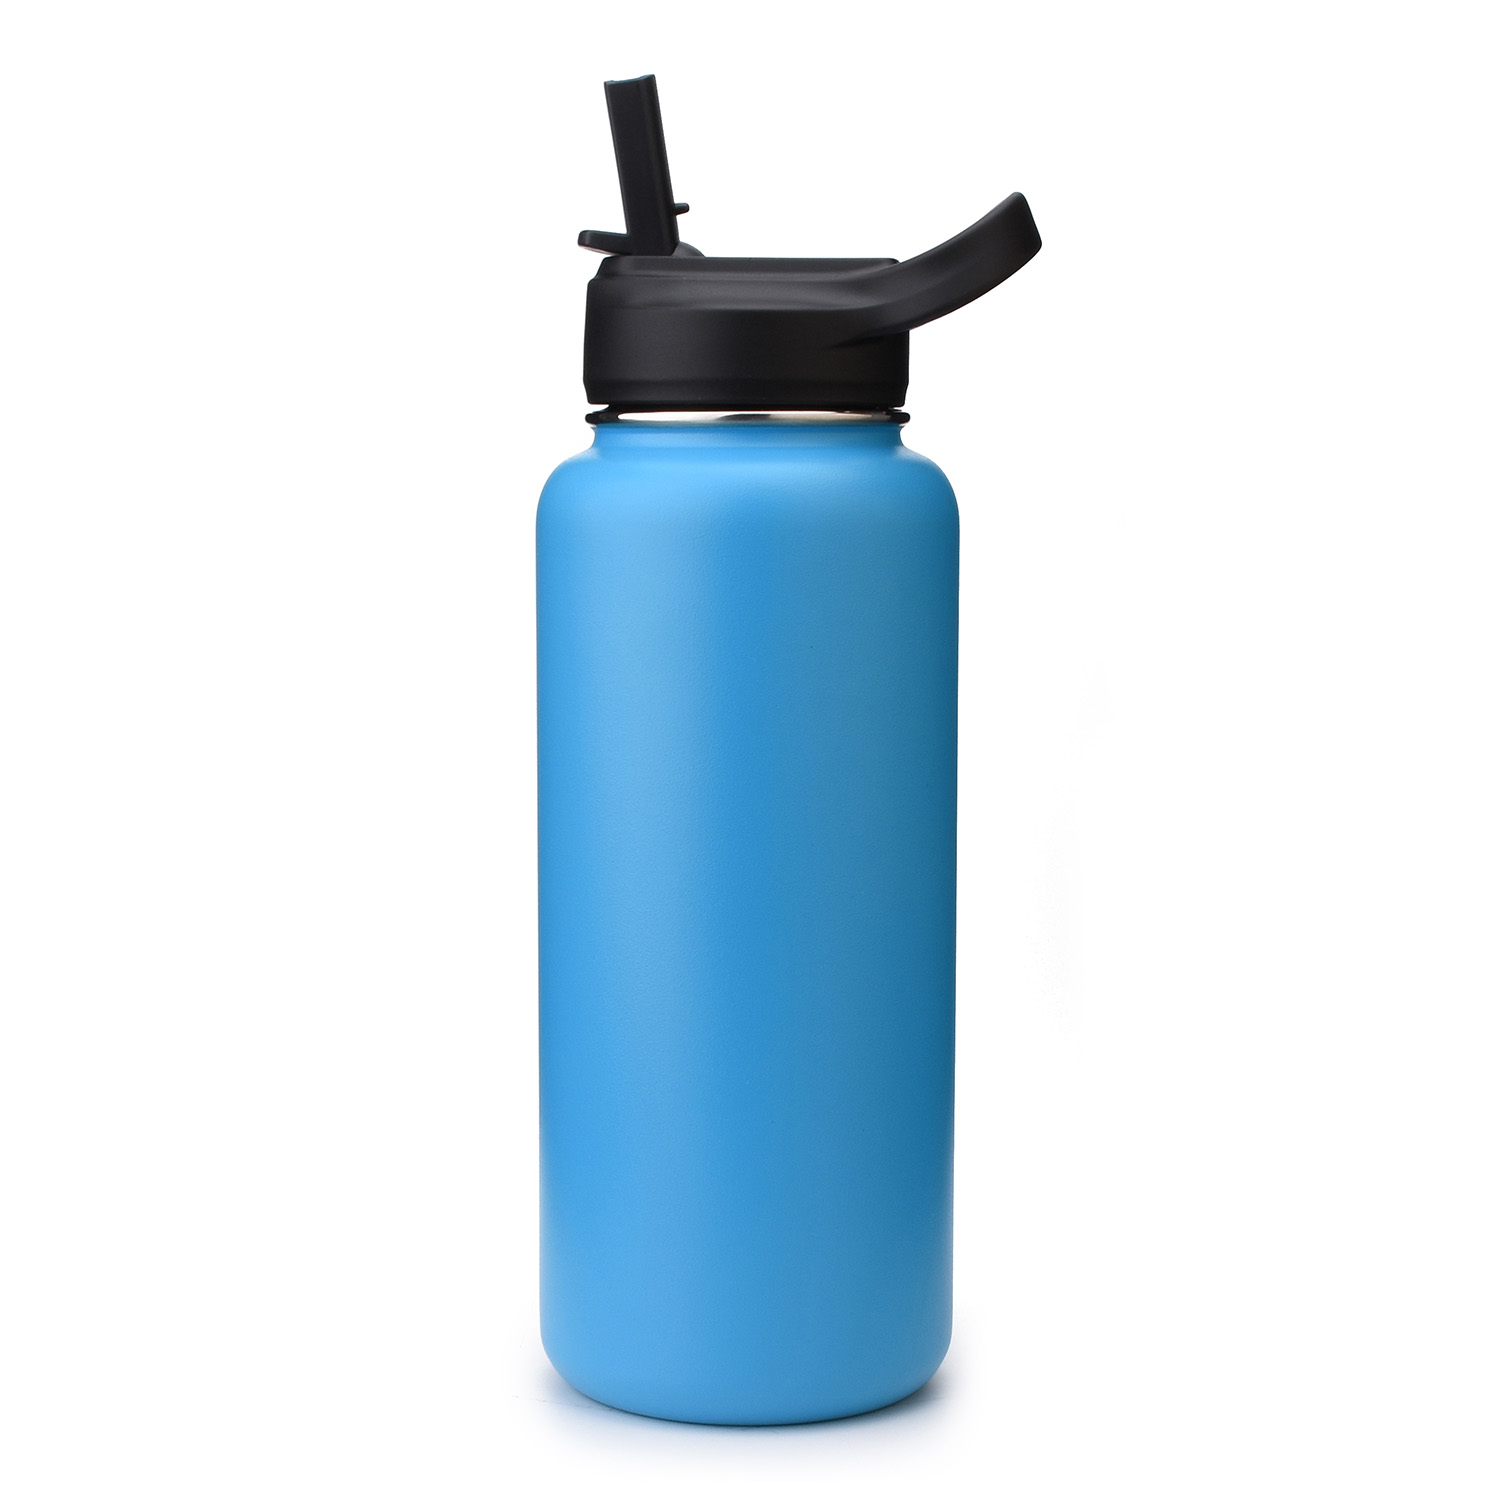 https://www.waterbottle.tech/wp-content/uploads/2020/08/wide-mouth-water-bottle-with-straw-lid-cap-s113292-1.jpg